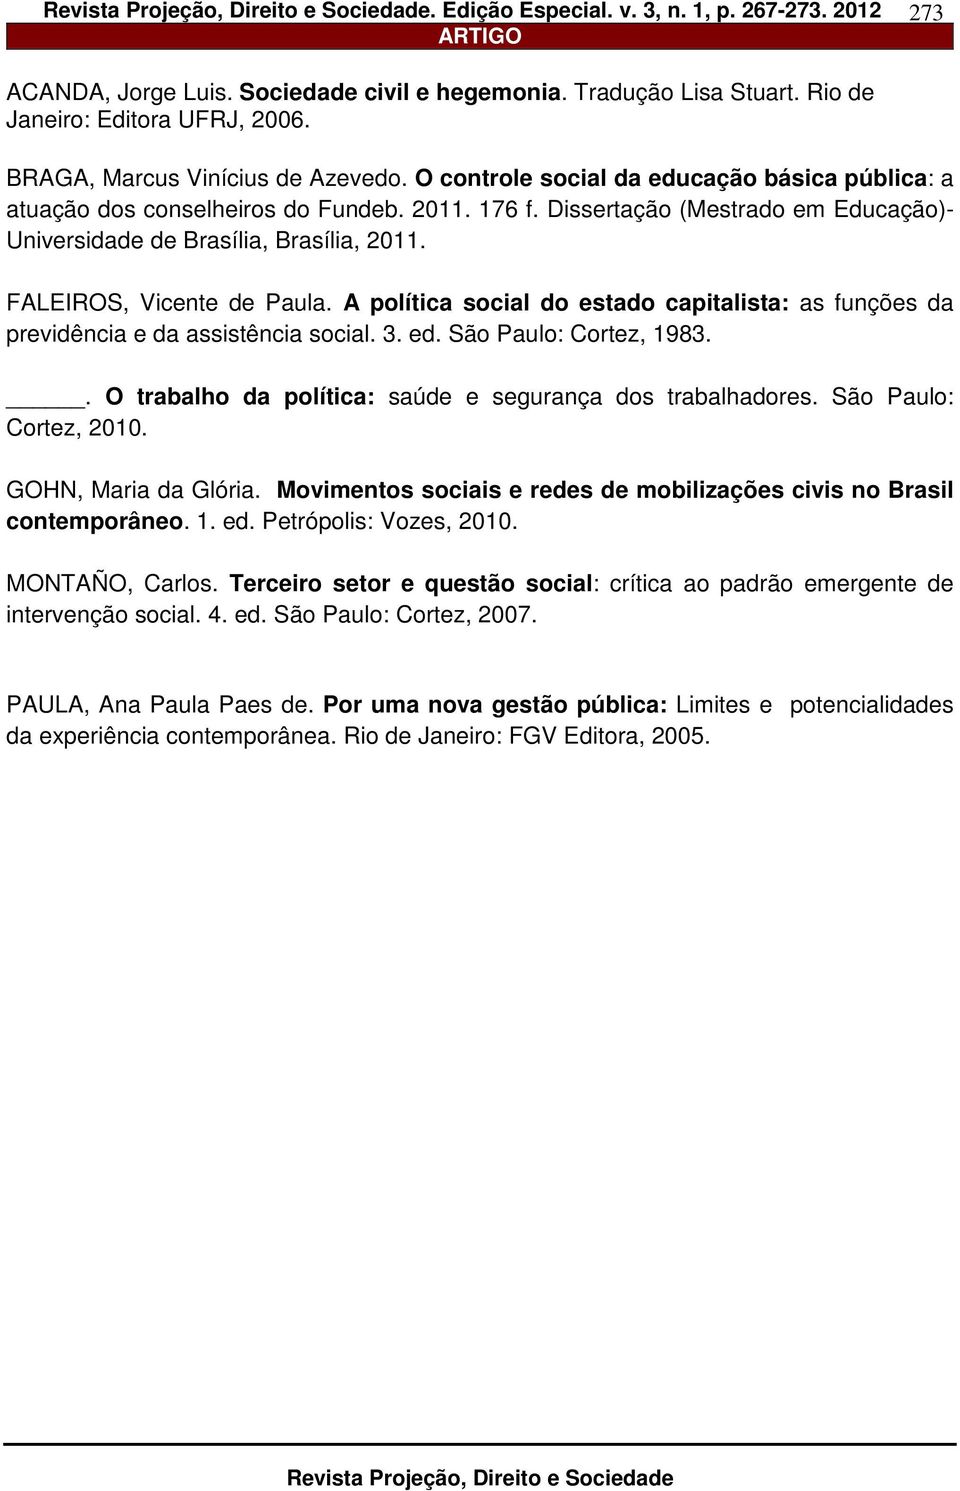 FALEIROS, Vicente de Paula. A política social do estado capitalista: as funções da previdência e da assistência social. 3. ed. São Paulo: Cortez, 1983.